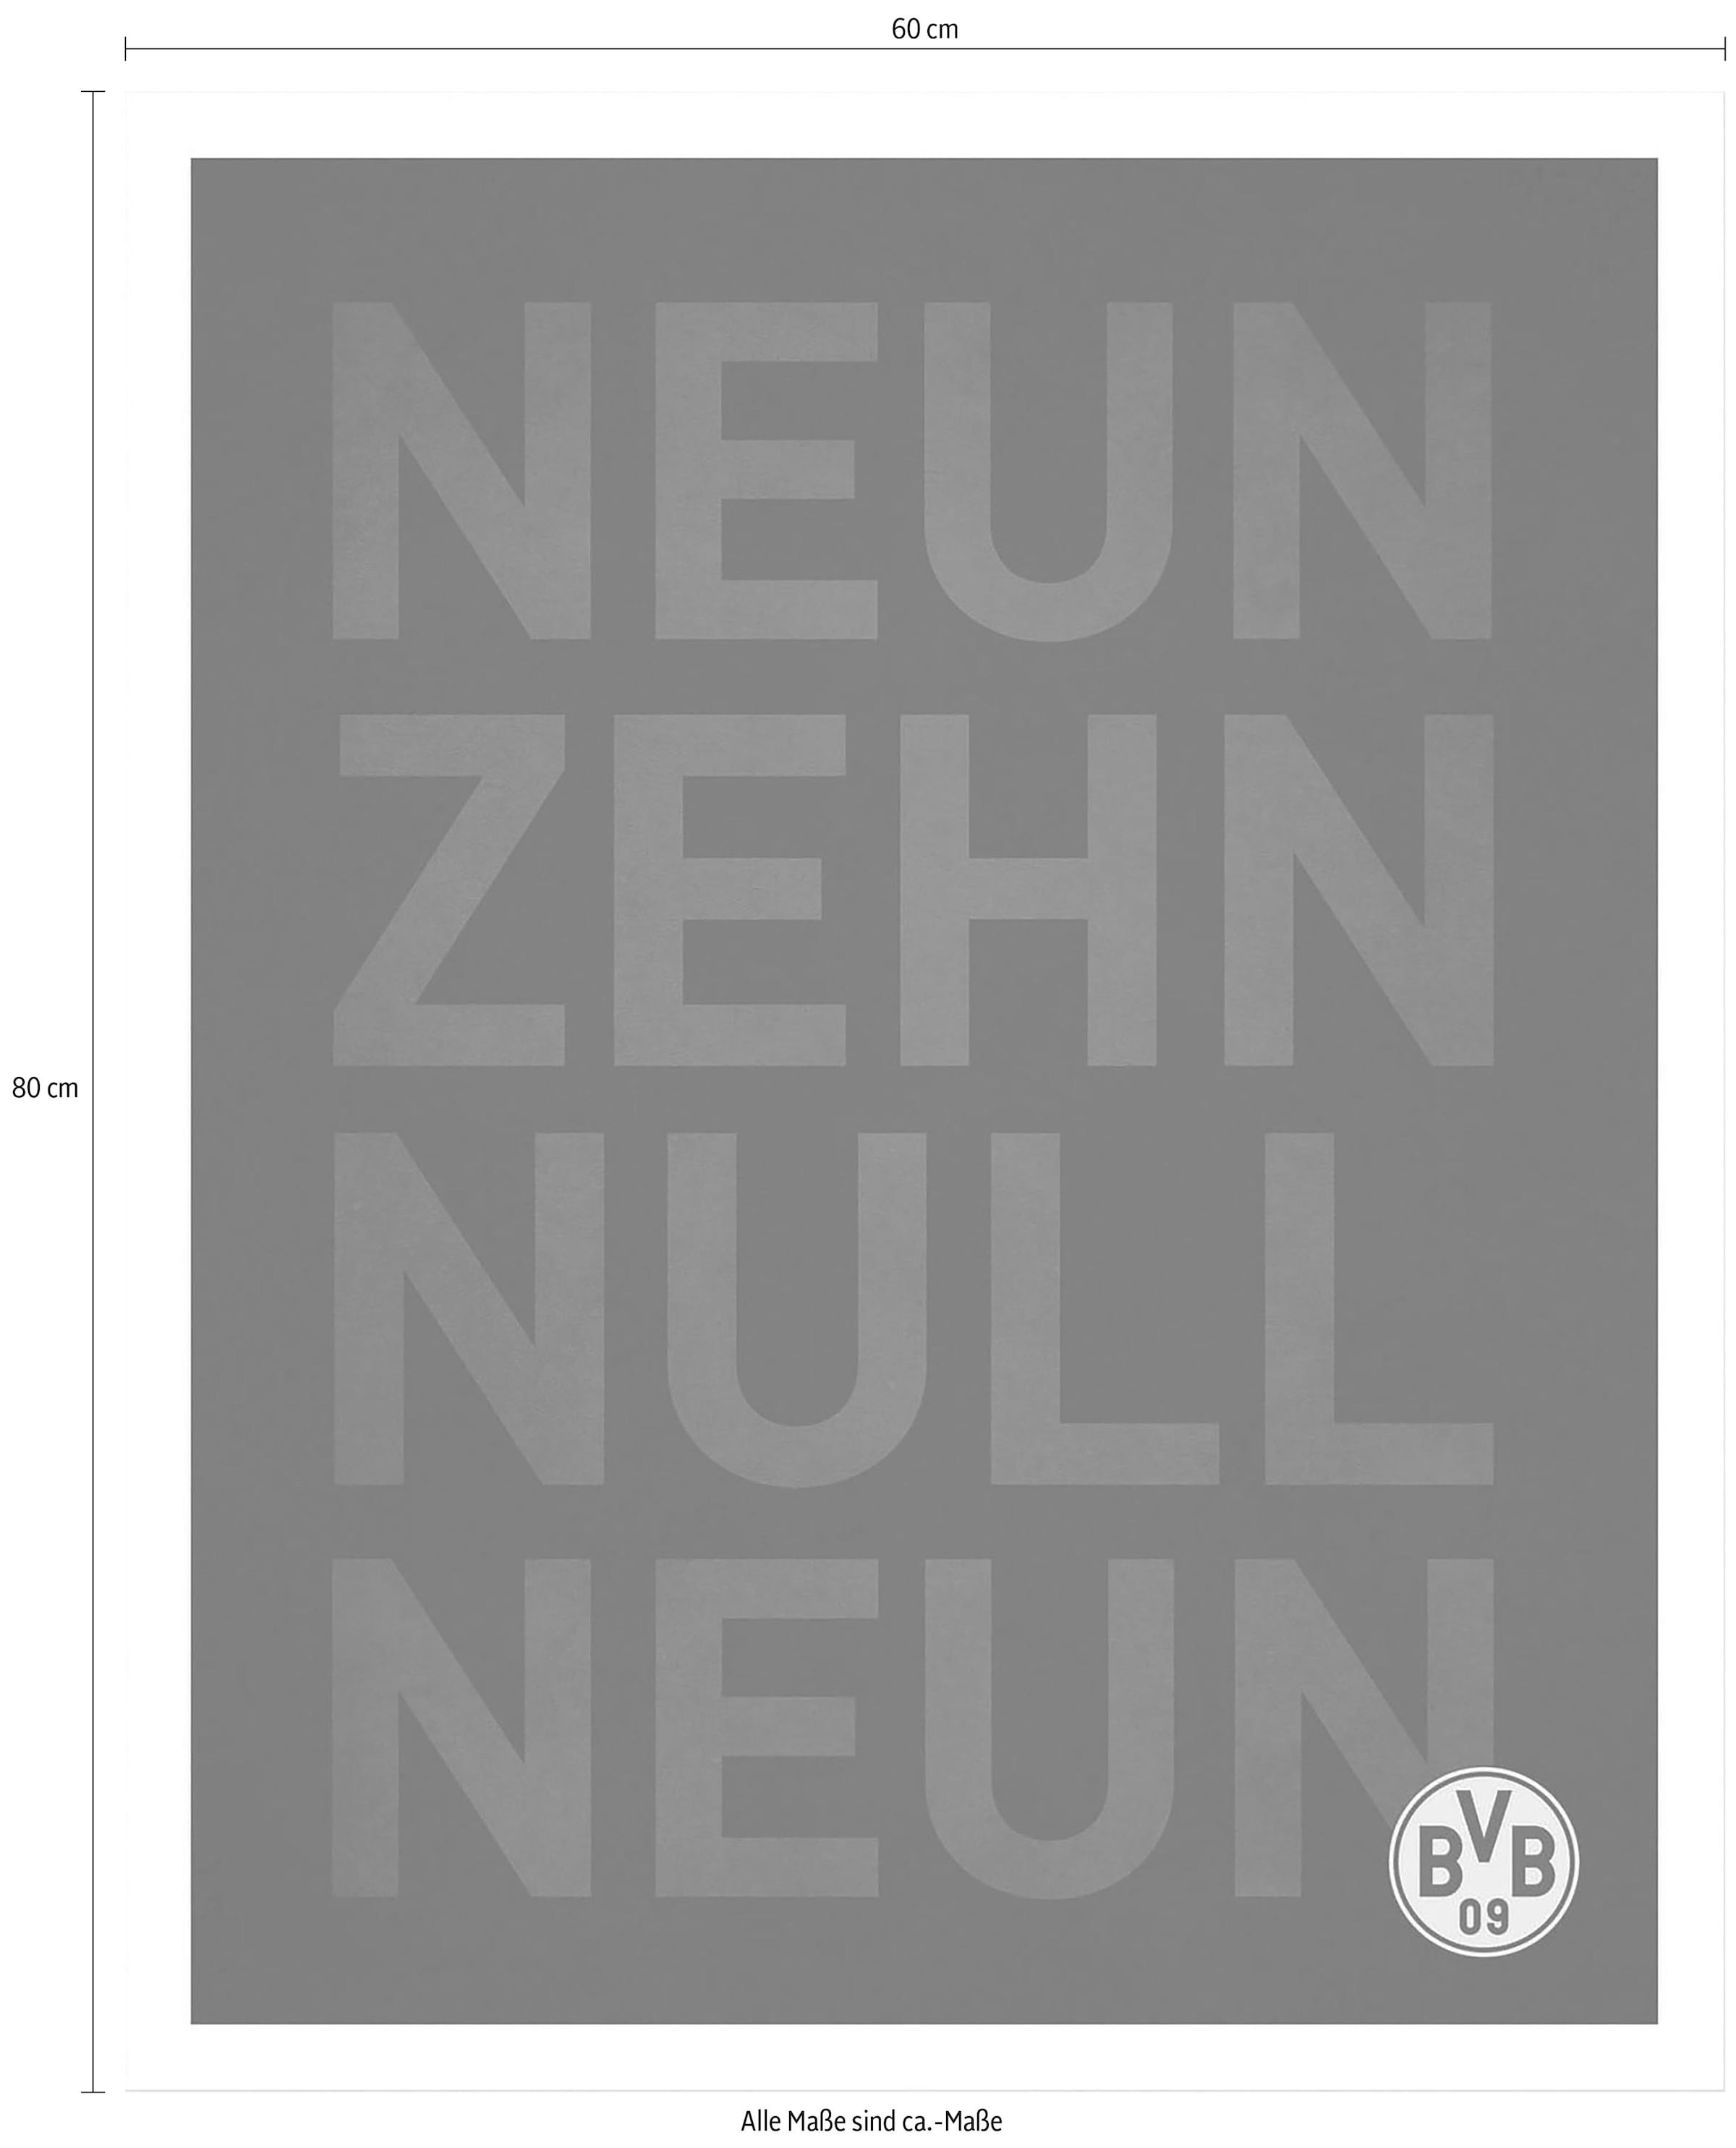 bestellen Neun Shop Poster, Bild, im Poster Wandbild, Null Online OTTO Neun«, Wall-Art Zehn Wandposter »BVB